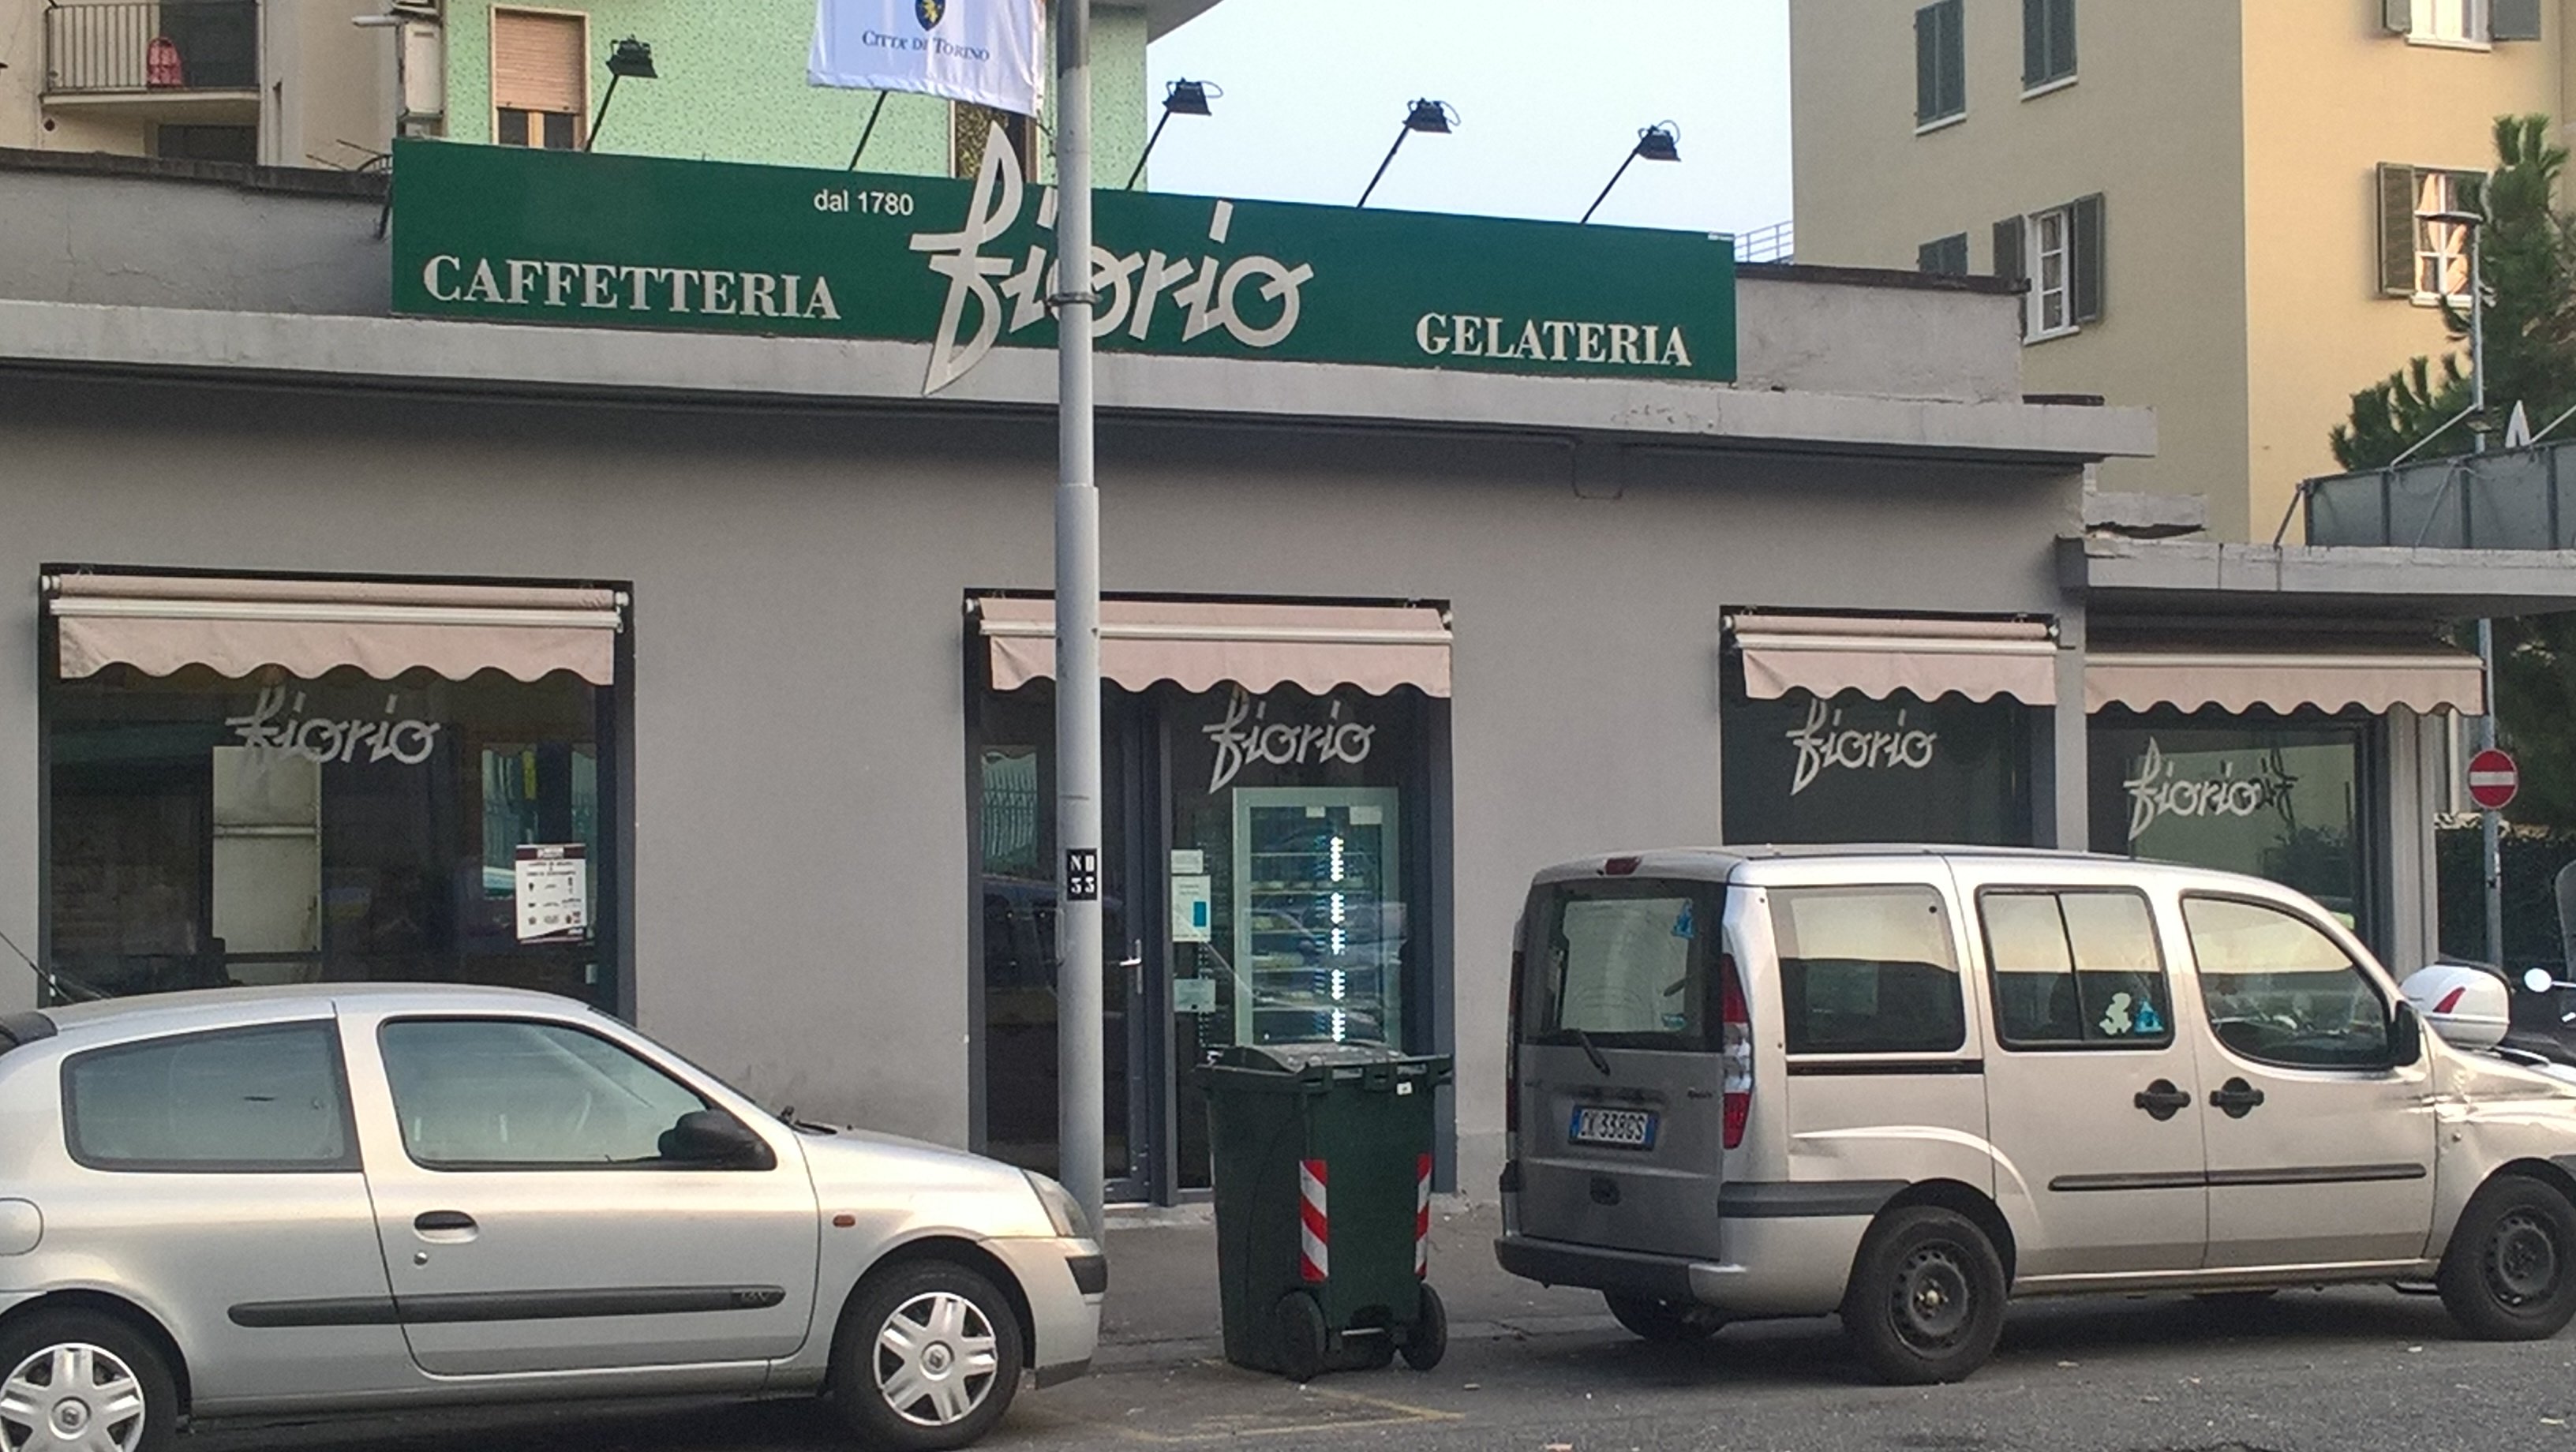 Caffe Fiorio, Torino